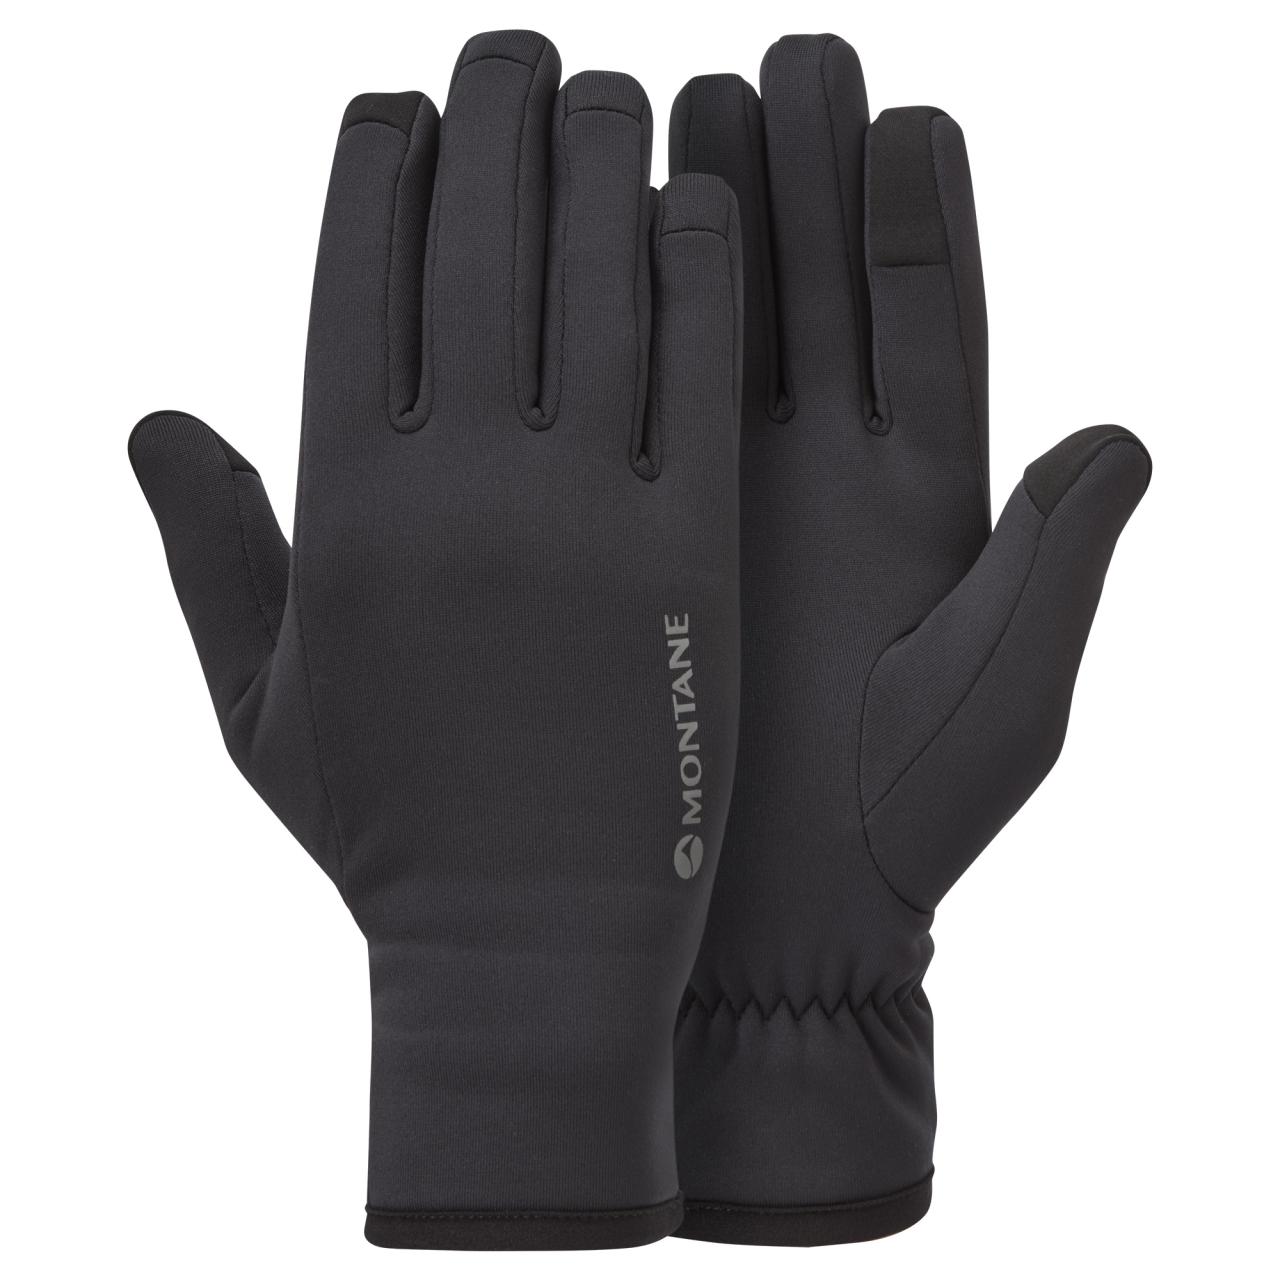 FEM FURY GLOVE-BLACK-S dámské prstové rukavice černé